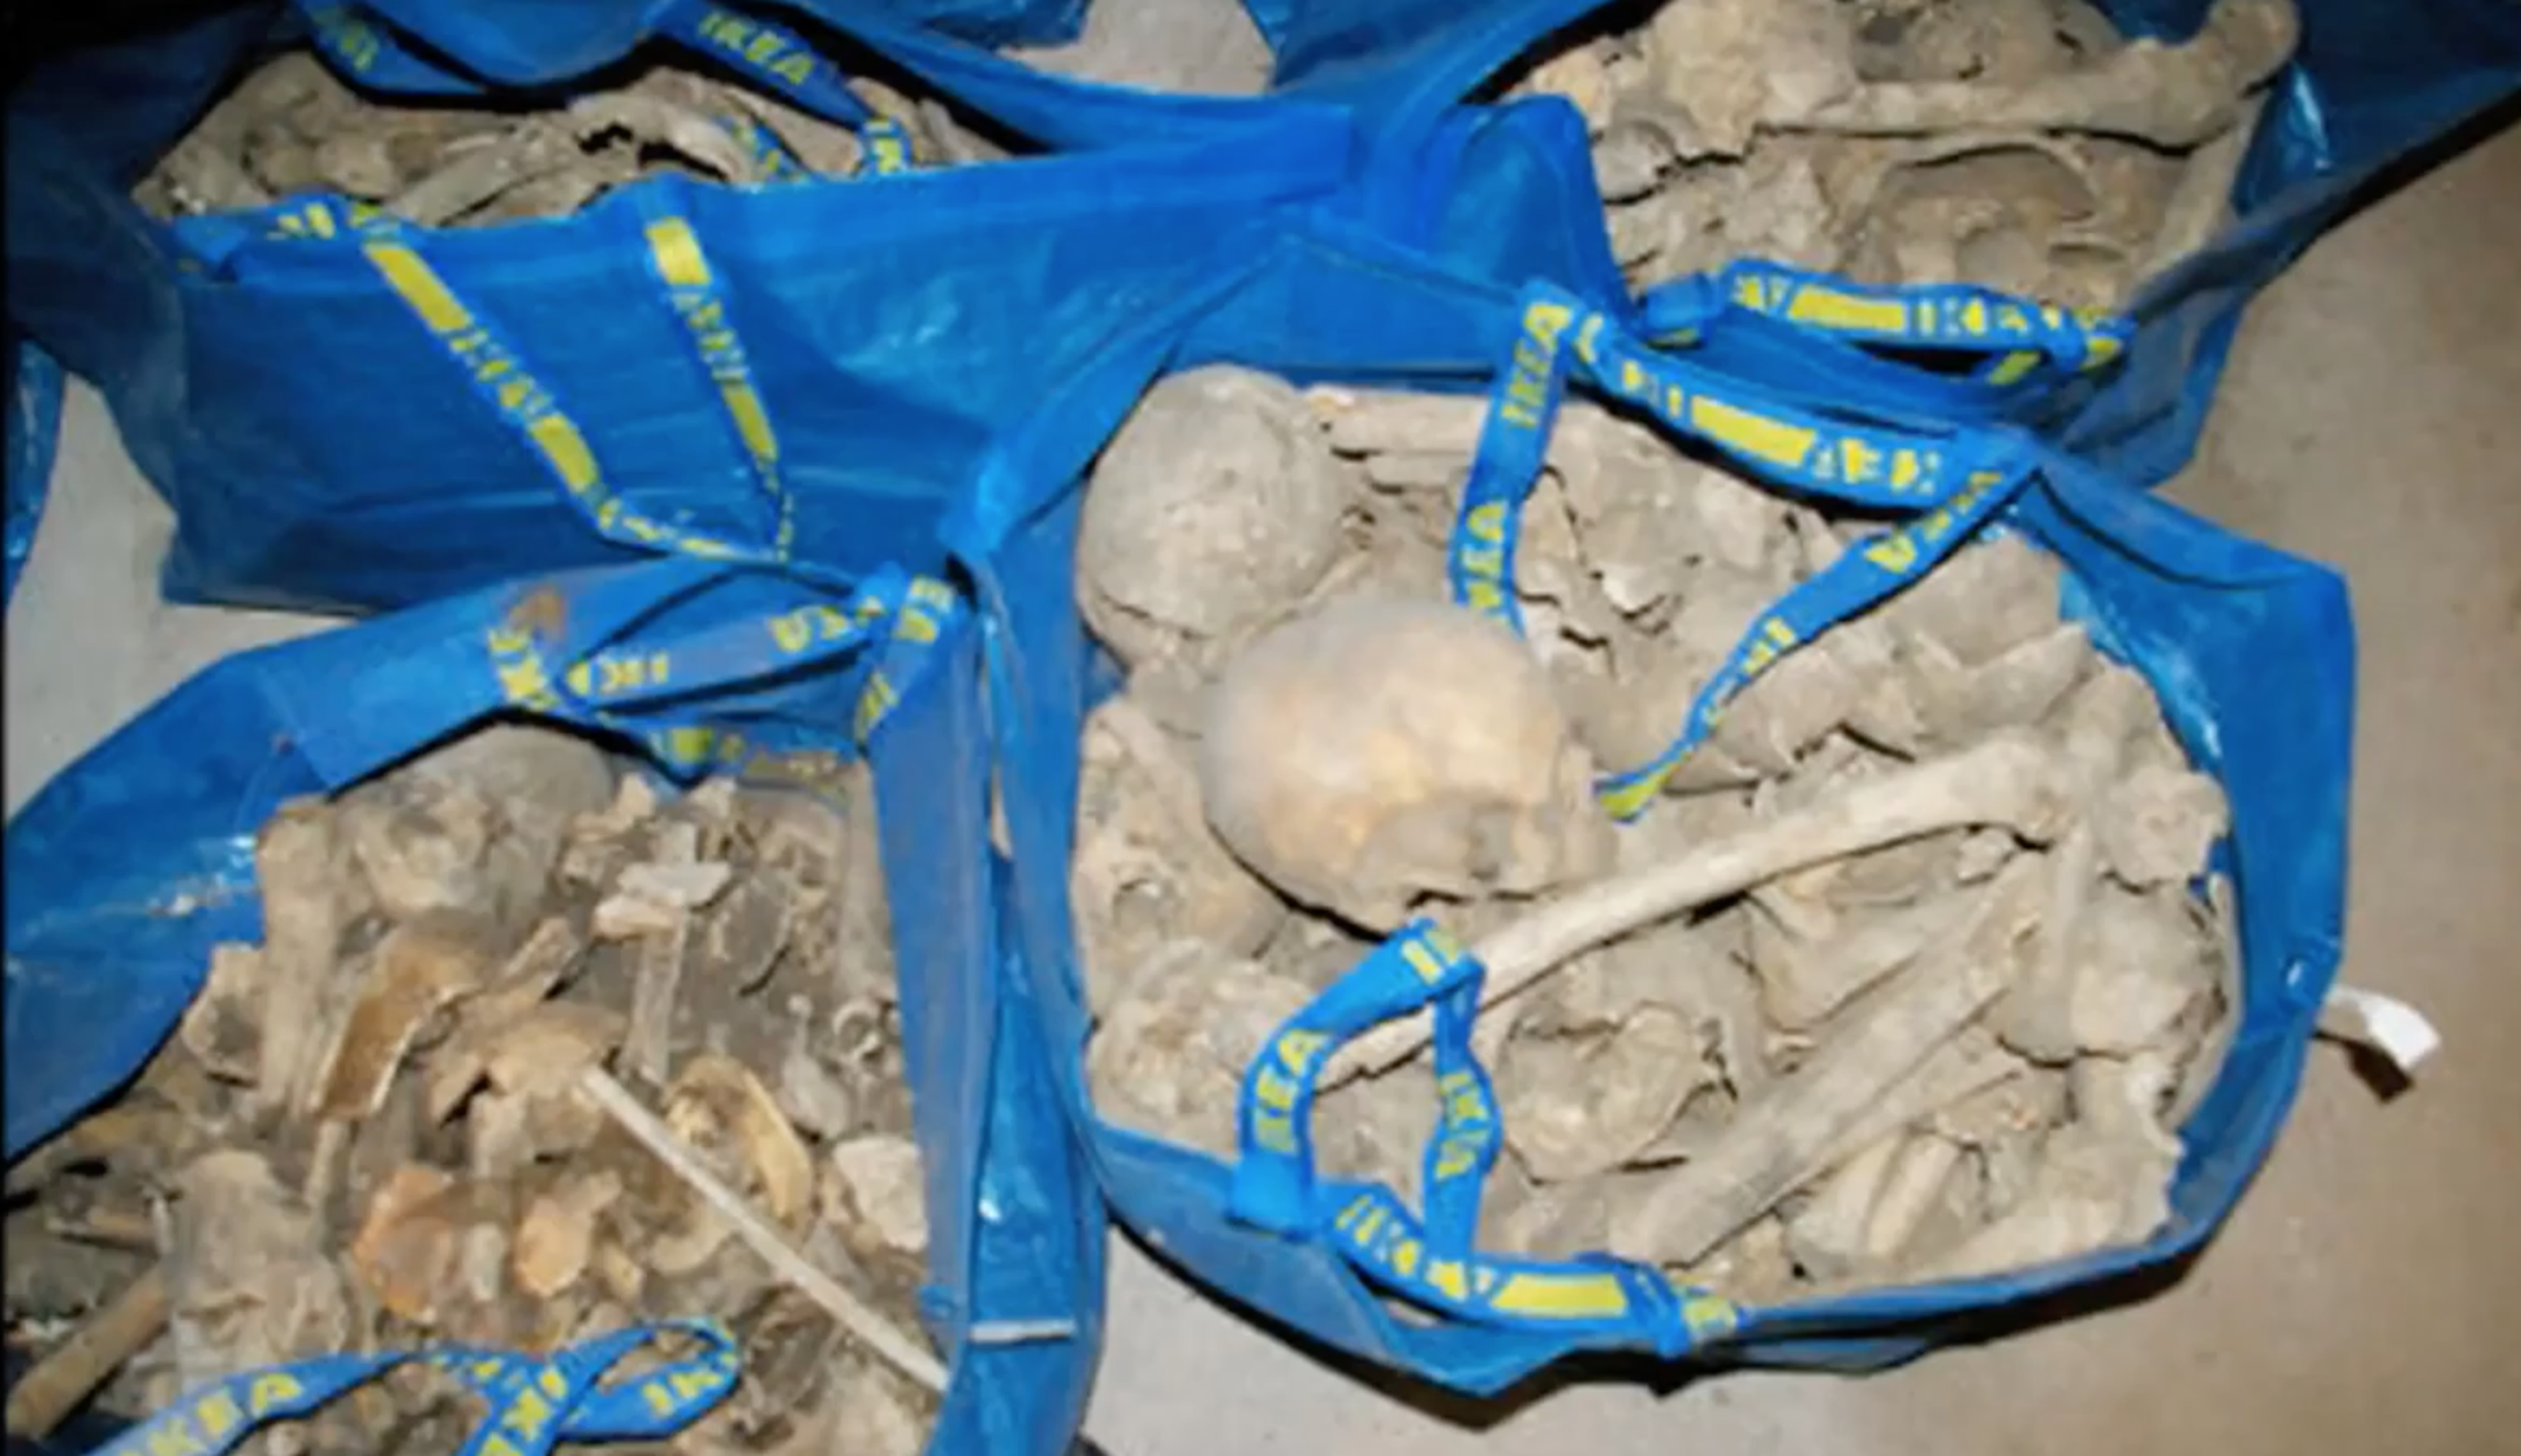 Una mujer encuentra una bolsa de Ikea llena de huesos con los restos de 80 personas